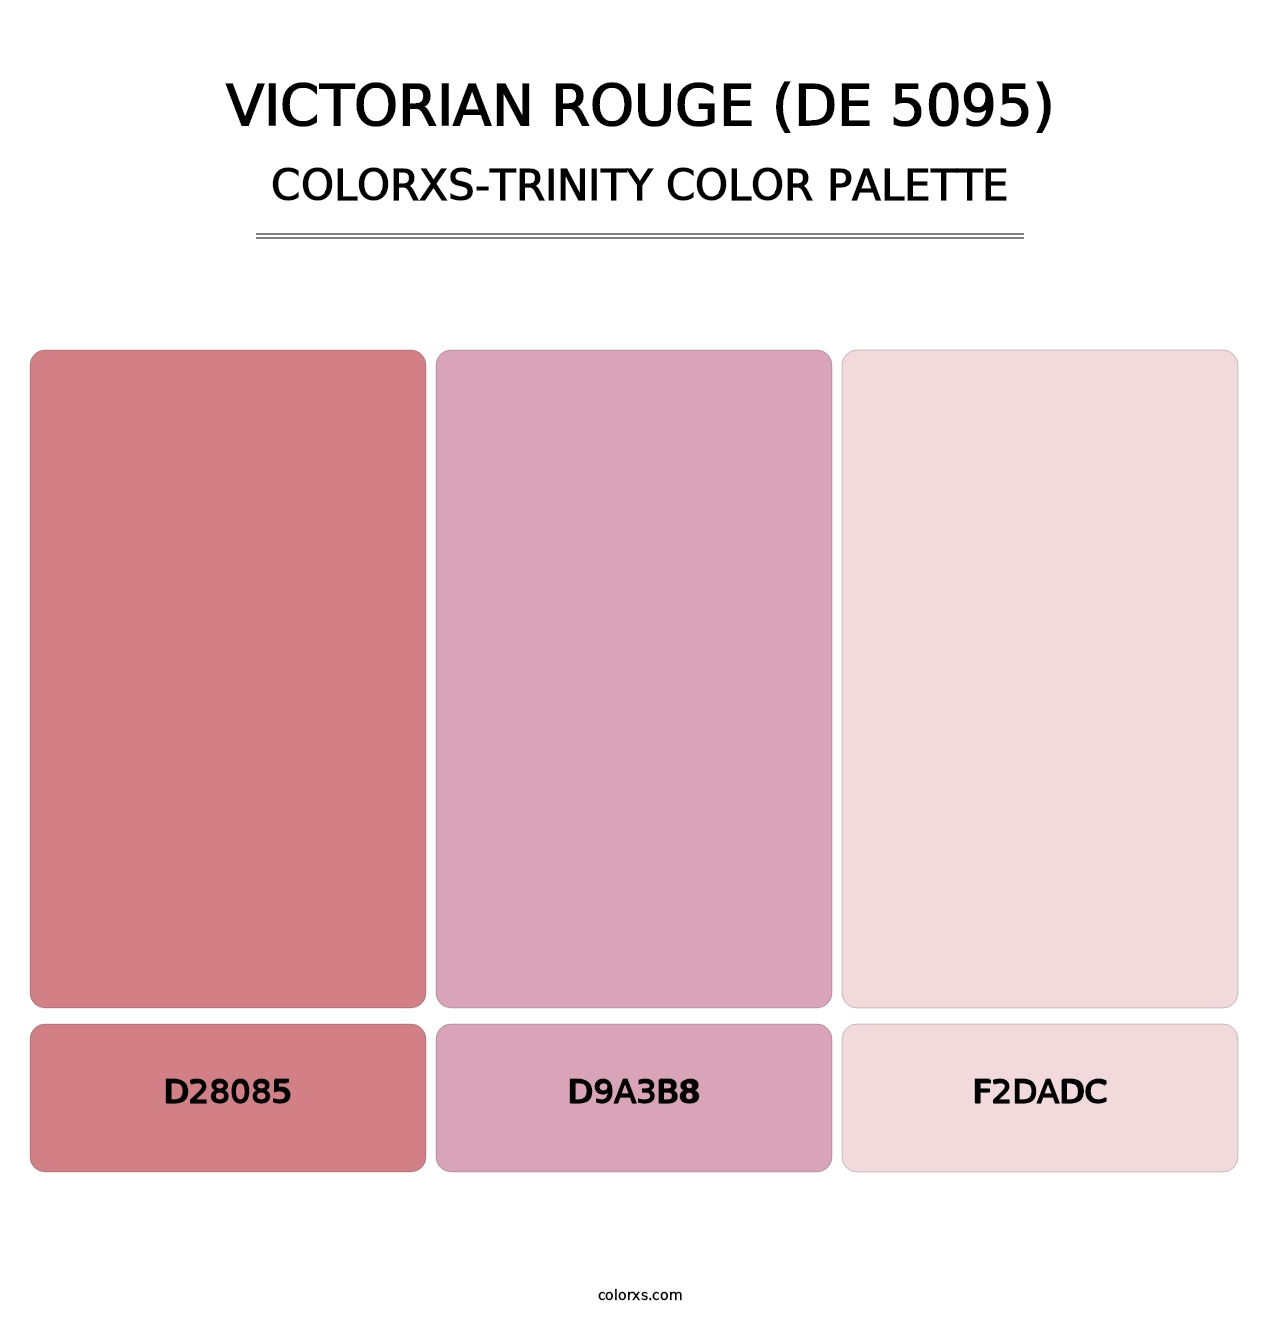 Victorian Rouge (DE 5095) - Colorxs Trinity Palette